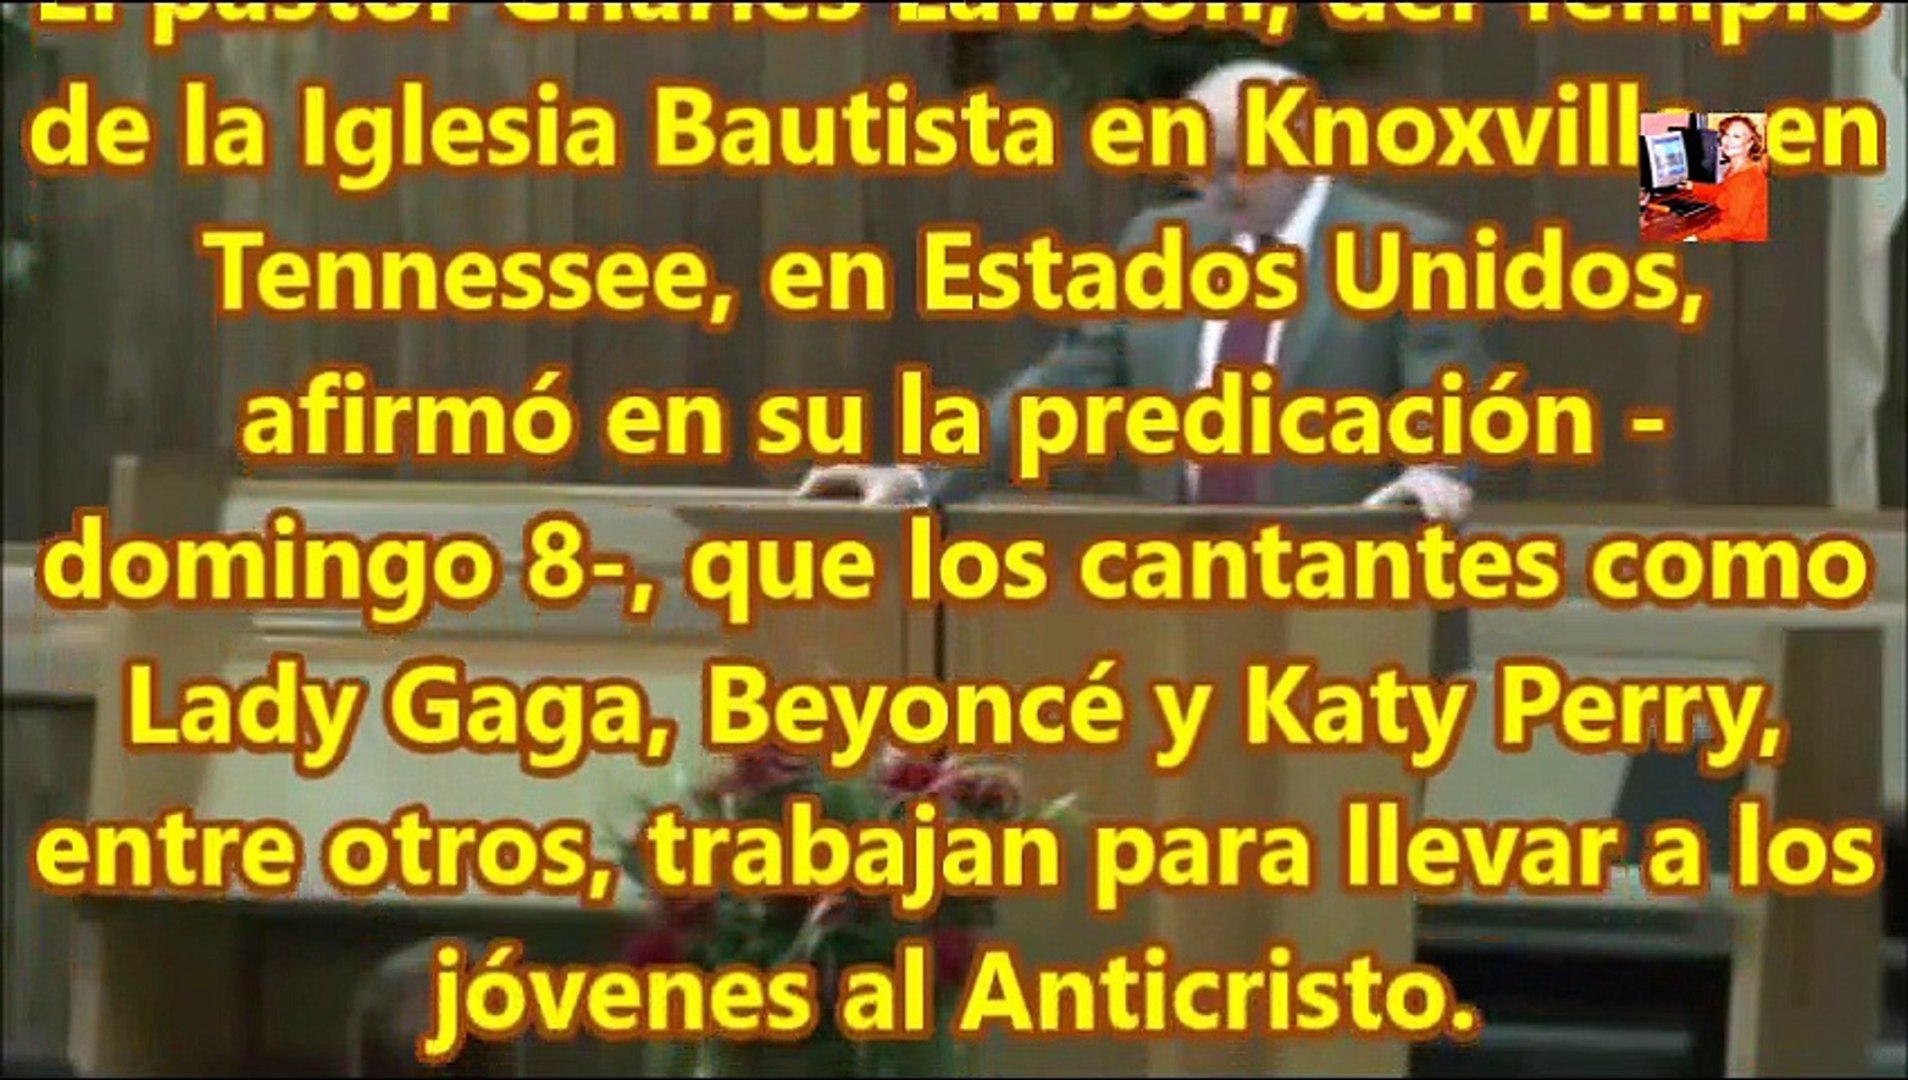 Lady Gaga,Katty Perry,Beyonce,tienen pacto con el diablo